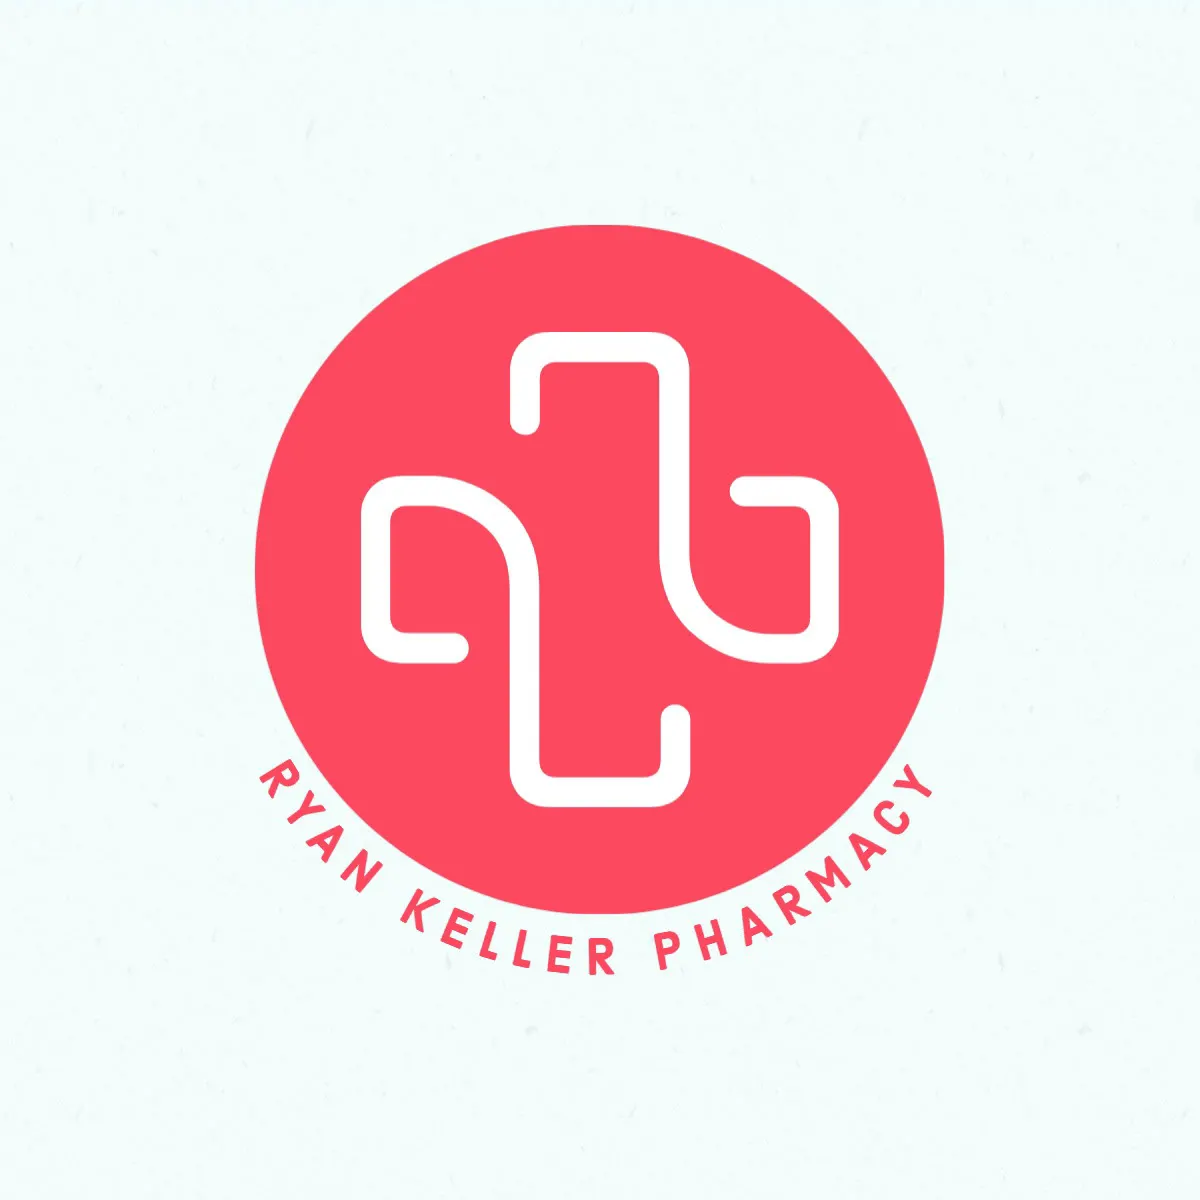 Red White Keller Pharmacy Logo